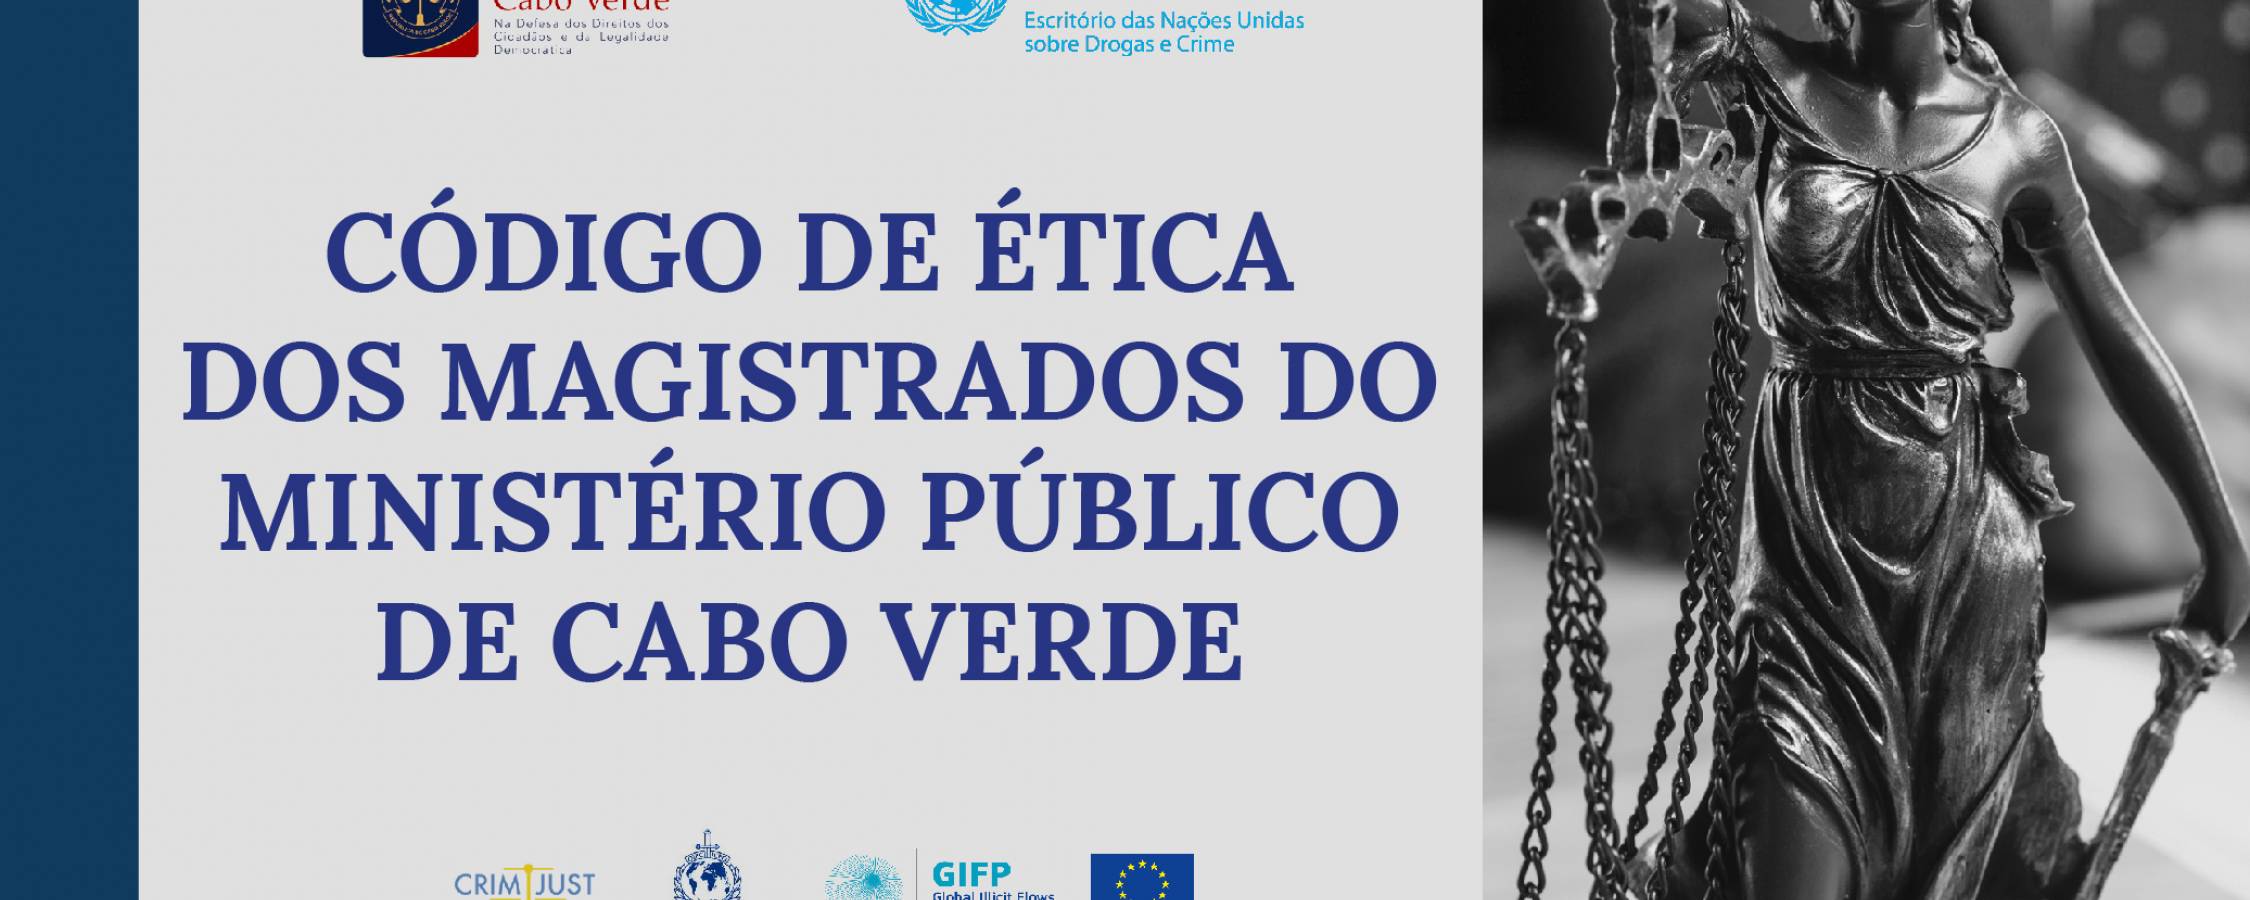 Conheça o Código de Ética dos Magistrados do Ministério Público de Cabo Verde